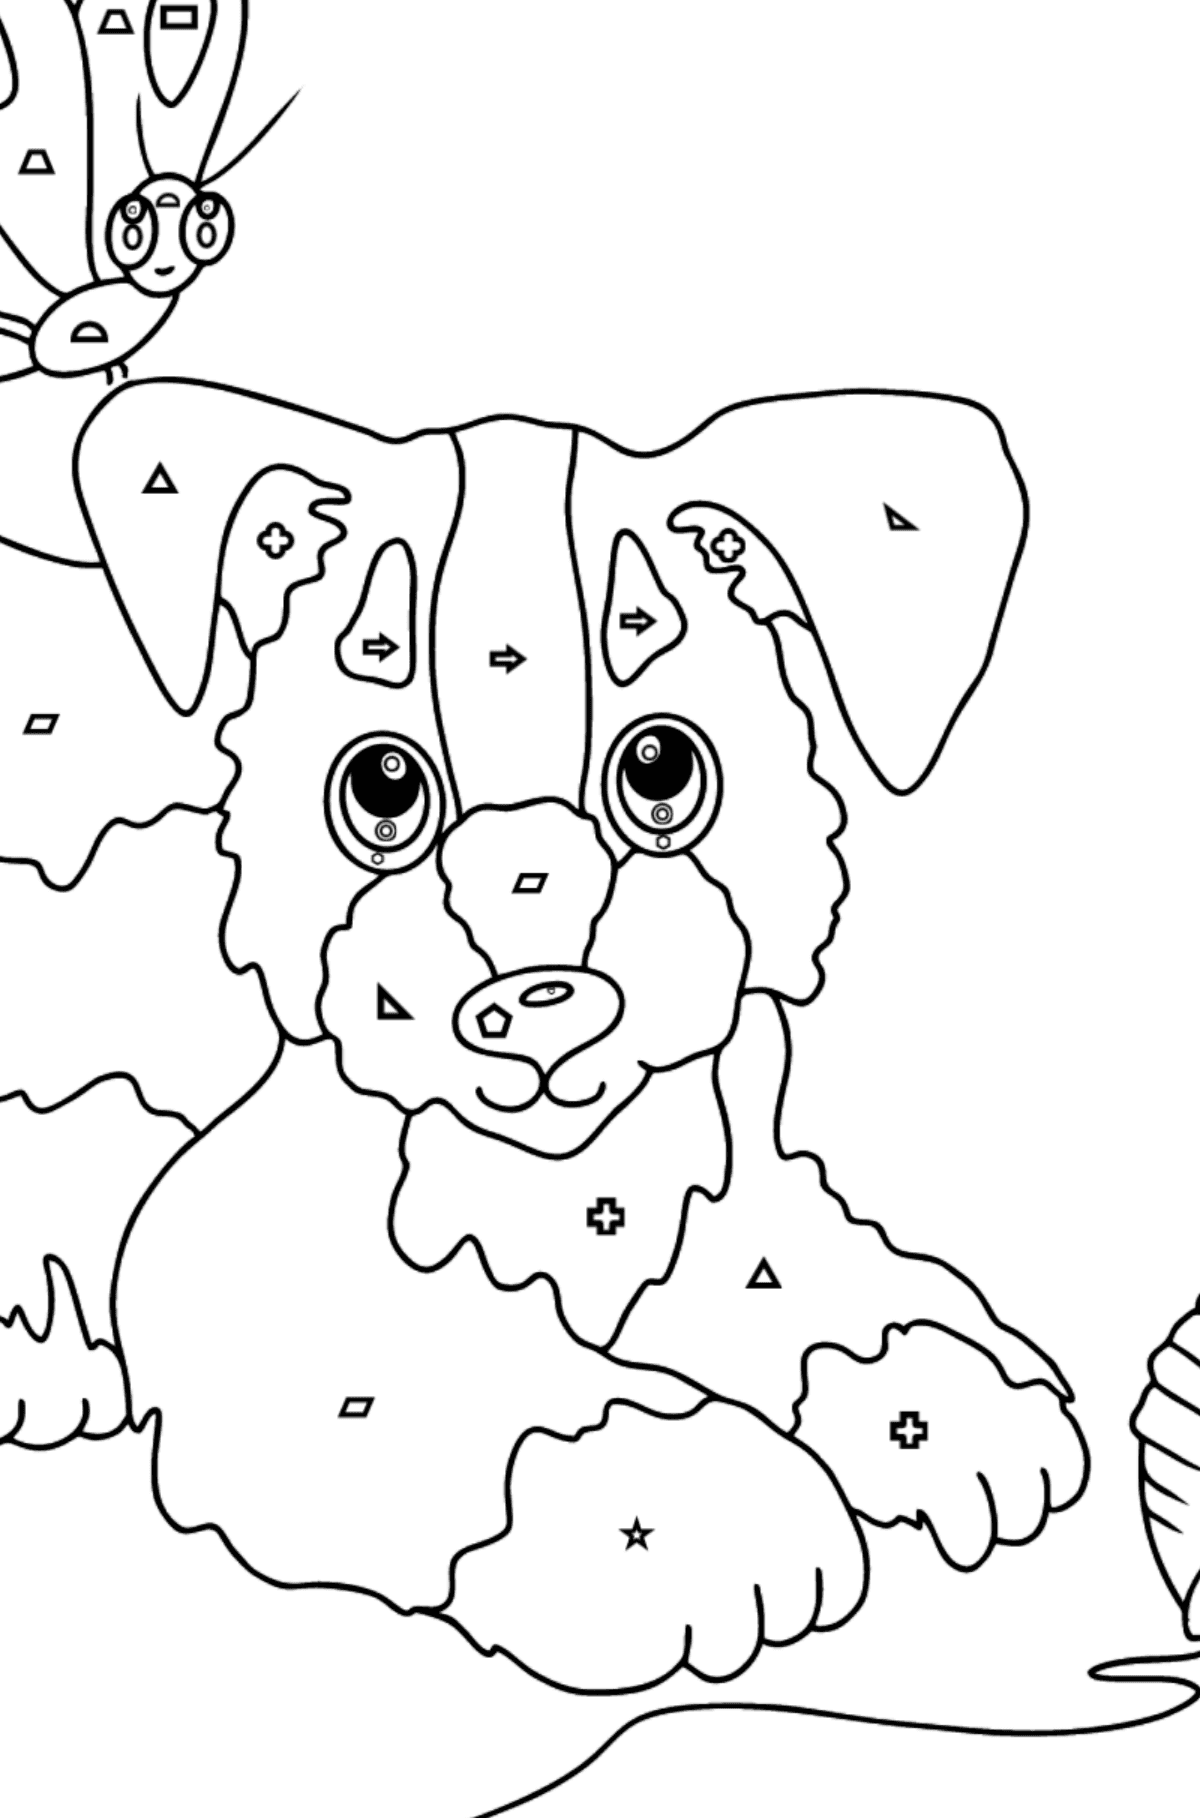 Dibujo para Colorear - Un Perro está Jugando con un Bola de Estambre y con Mariposas - Colorear por Formas Geométricas para Niños